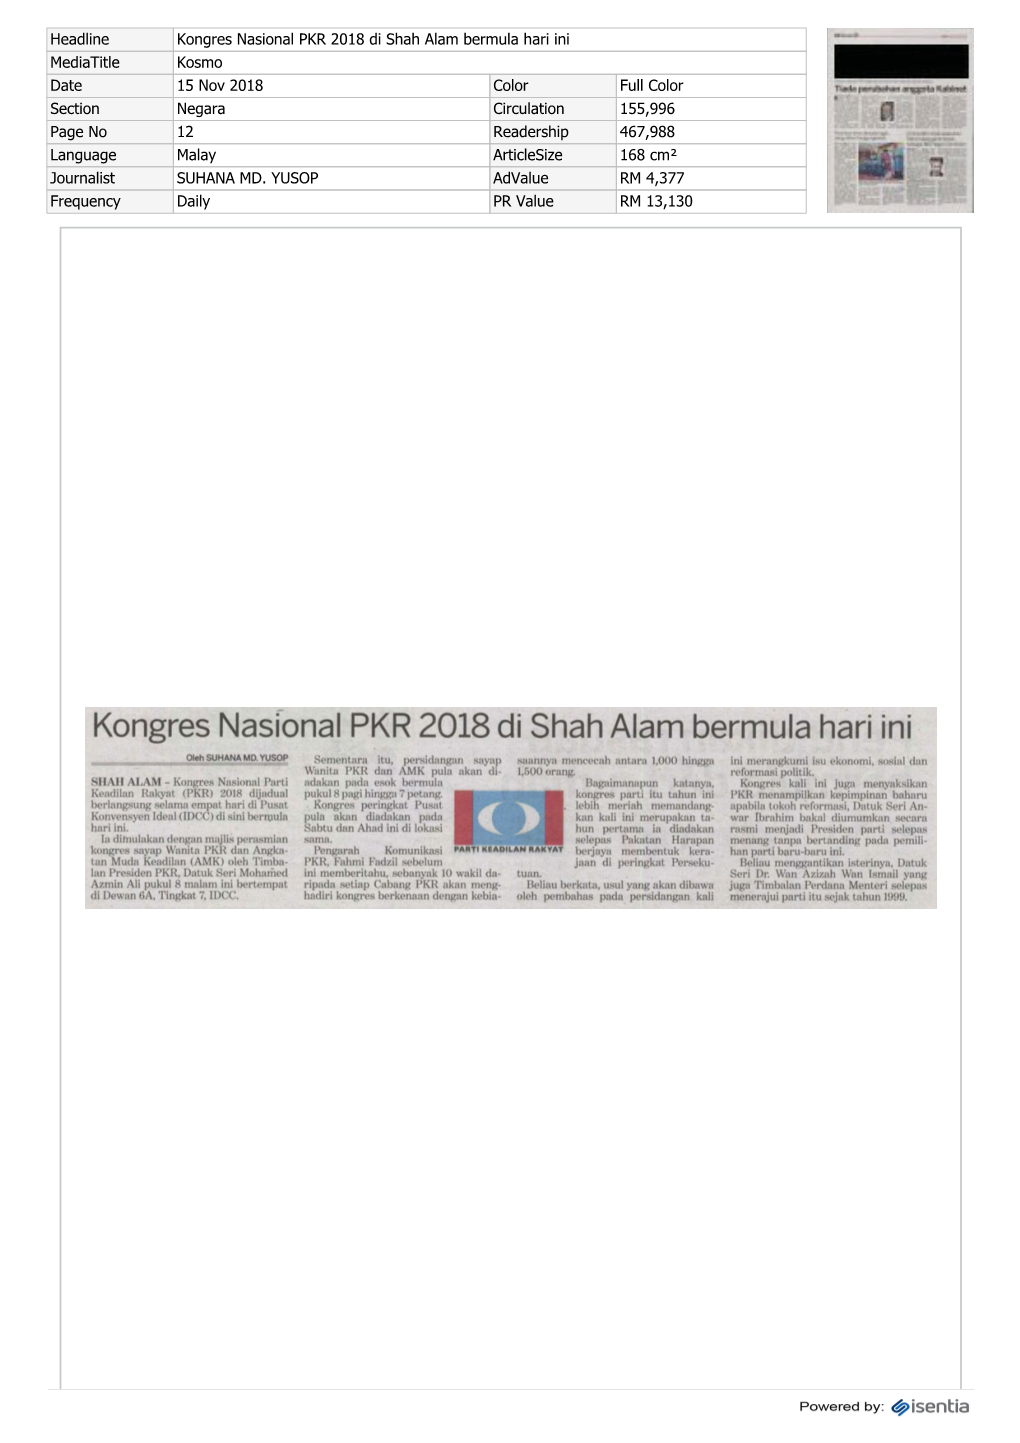 Kongres Nasional PKR 2018 Di Shah Alam Bermula Hari